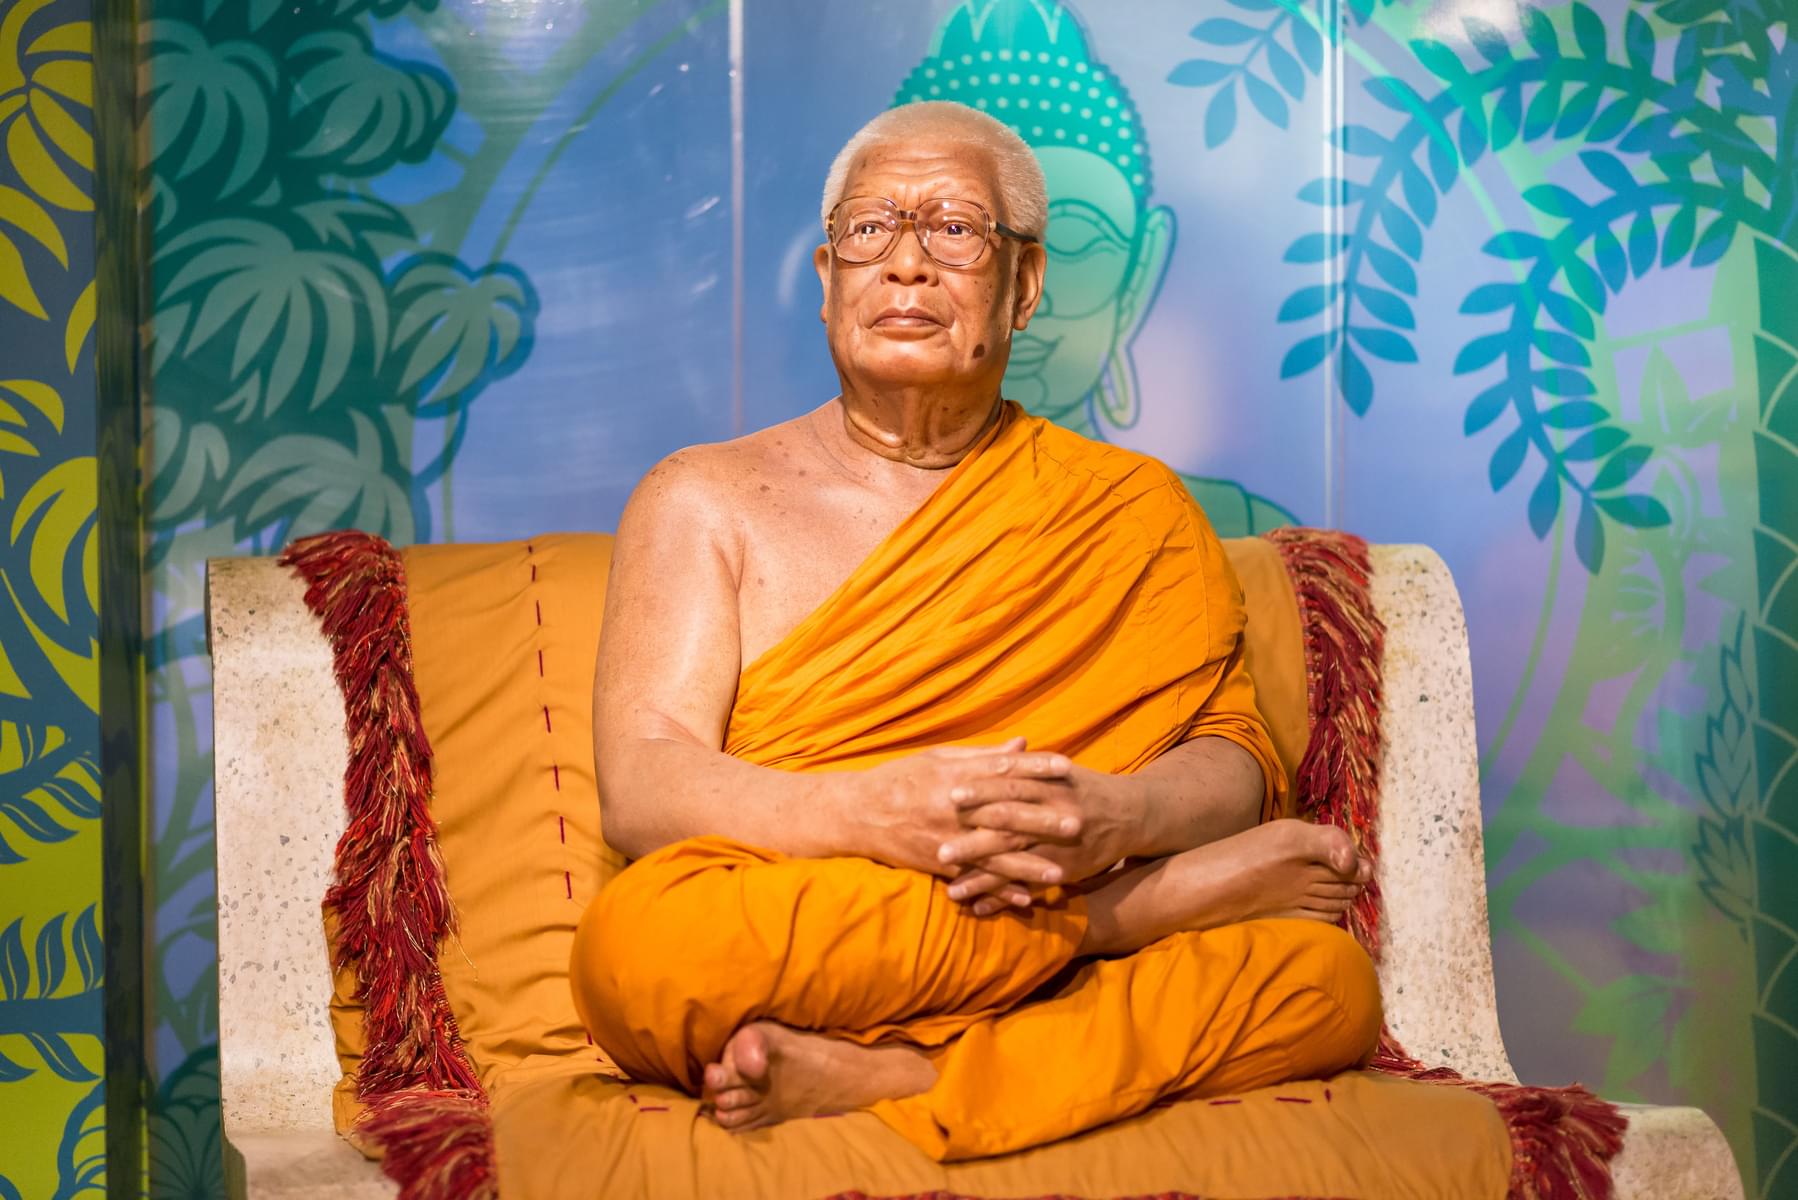 Buddhadasa Bhikkhu